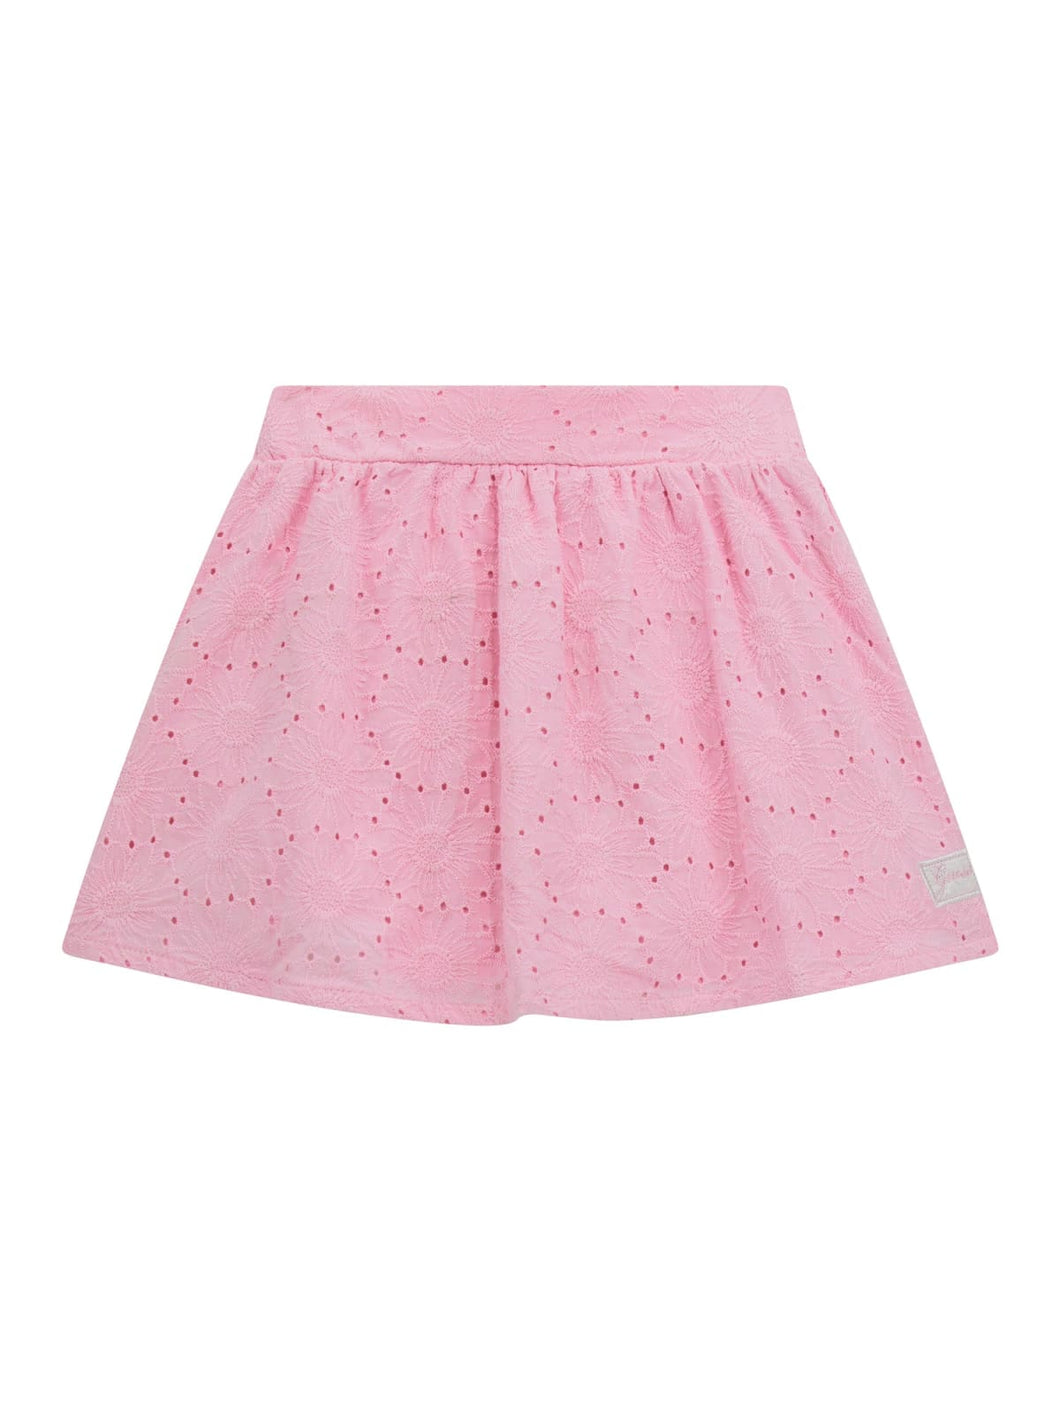 Guess Girls Pink Skirt